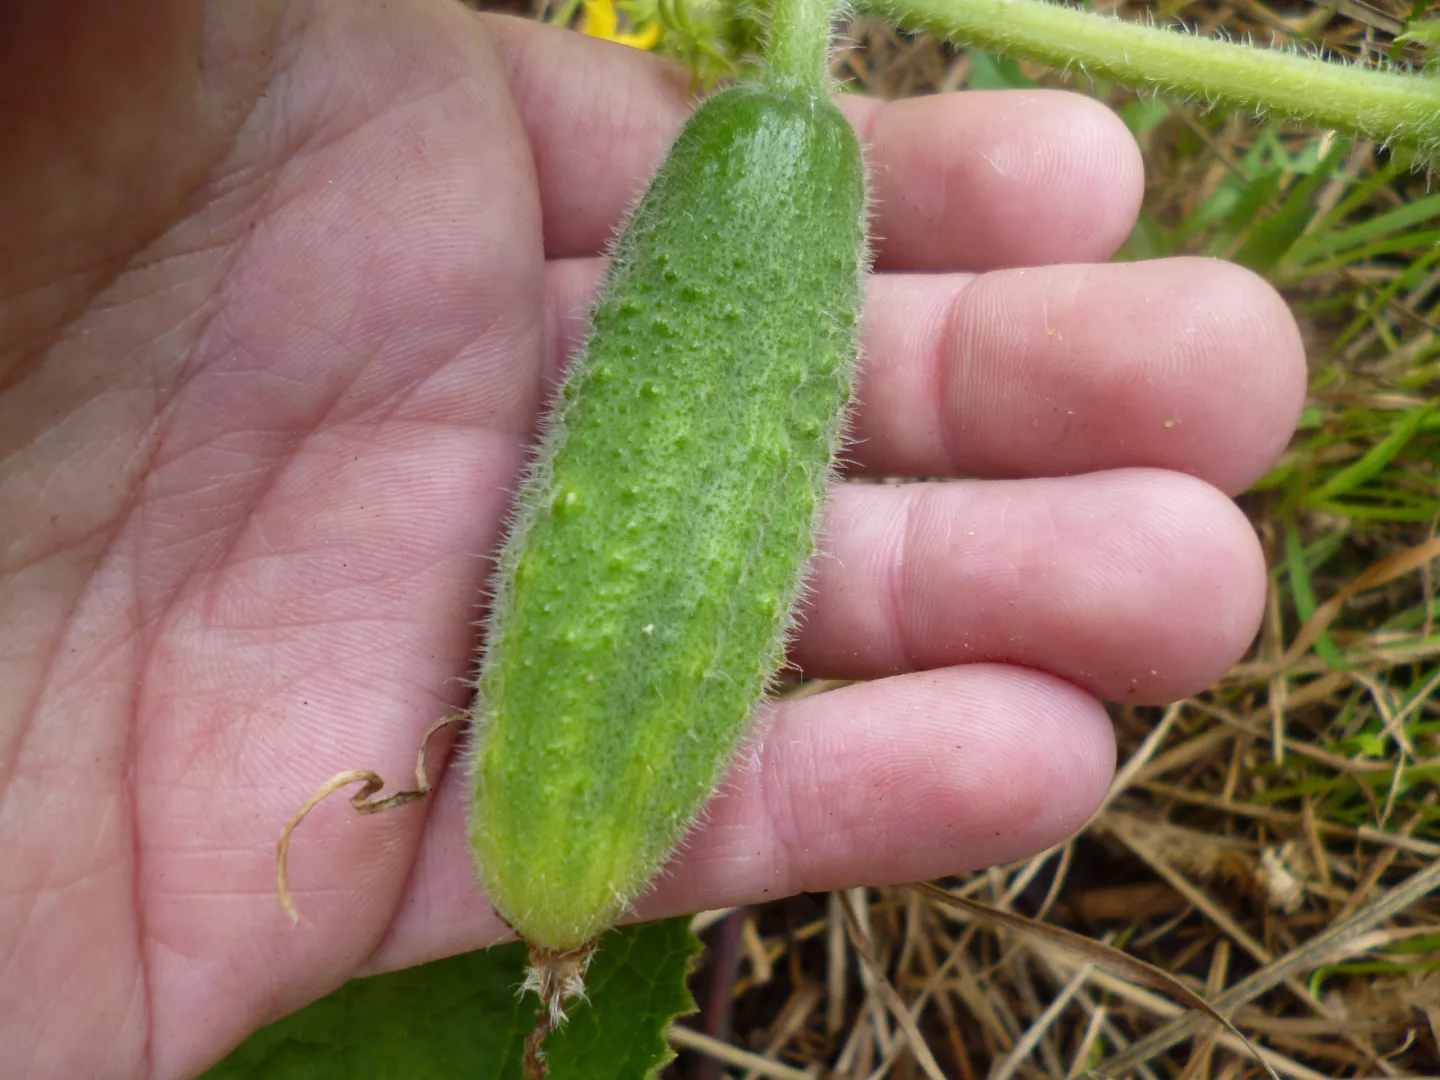 Bigger cucumber